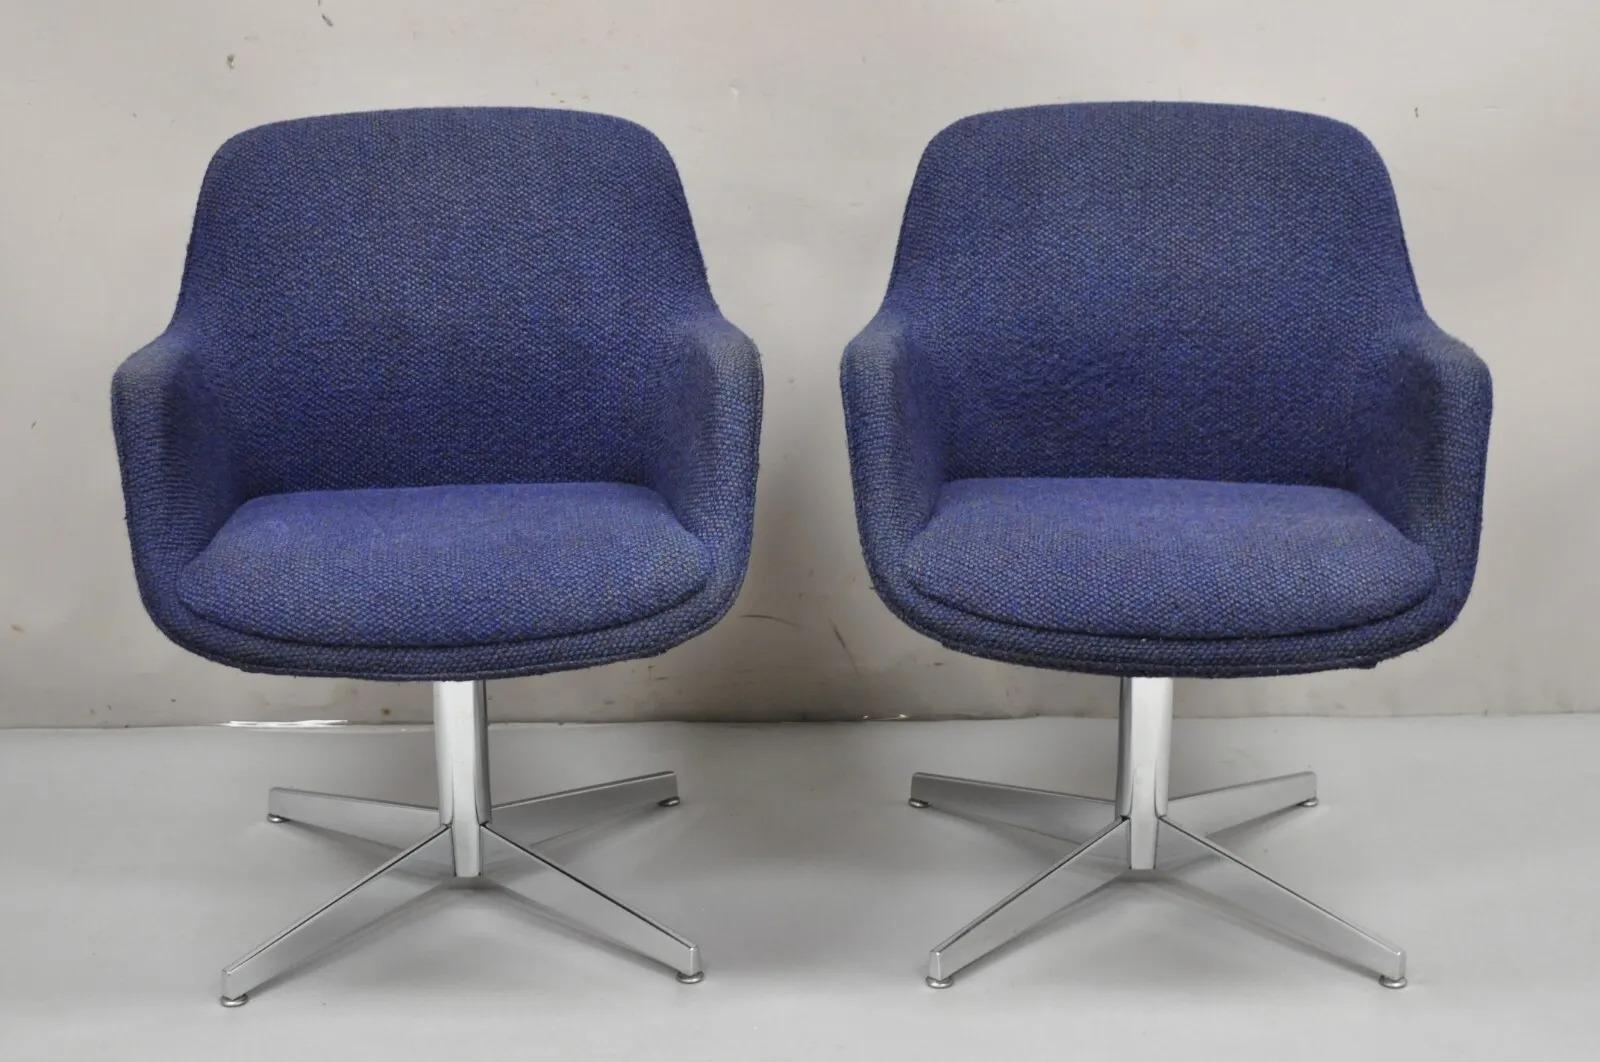 Vintage Mid Century Modern Blue Upholstered Chrome Swivel Base Club Chairs - a Pair. Cet article se caractérise par un revêtement en laine bleue noueuse, une base pivotante chromée, des lignes modernistes épurées, un très bel article vintage. Circa